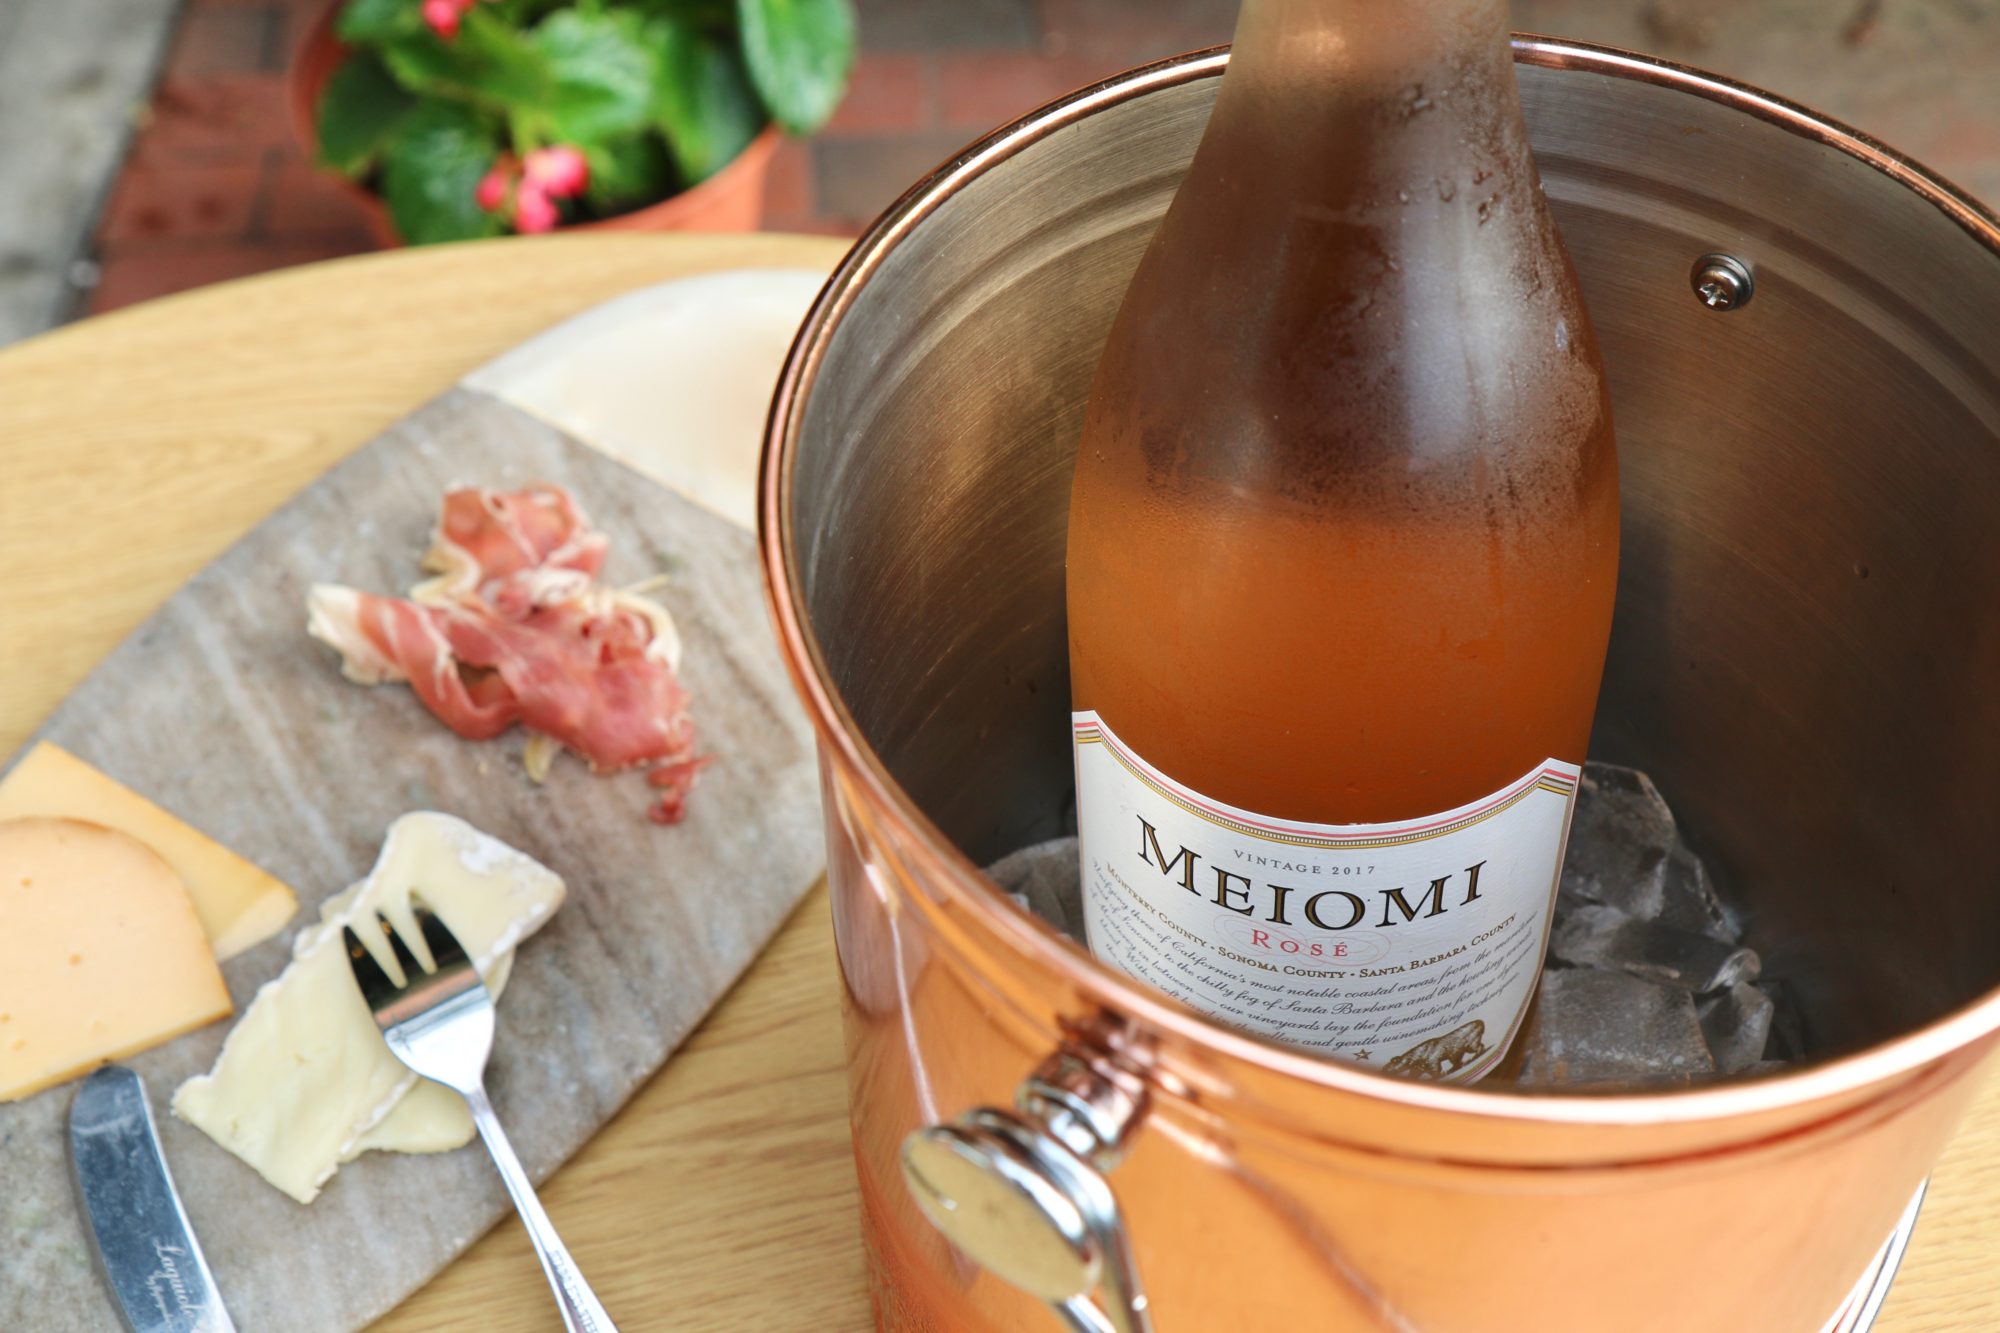 Meiomi Rose Wine in Bucket